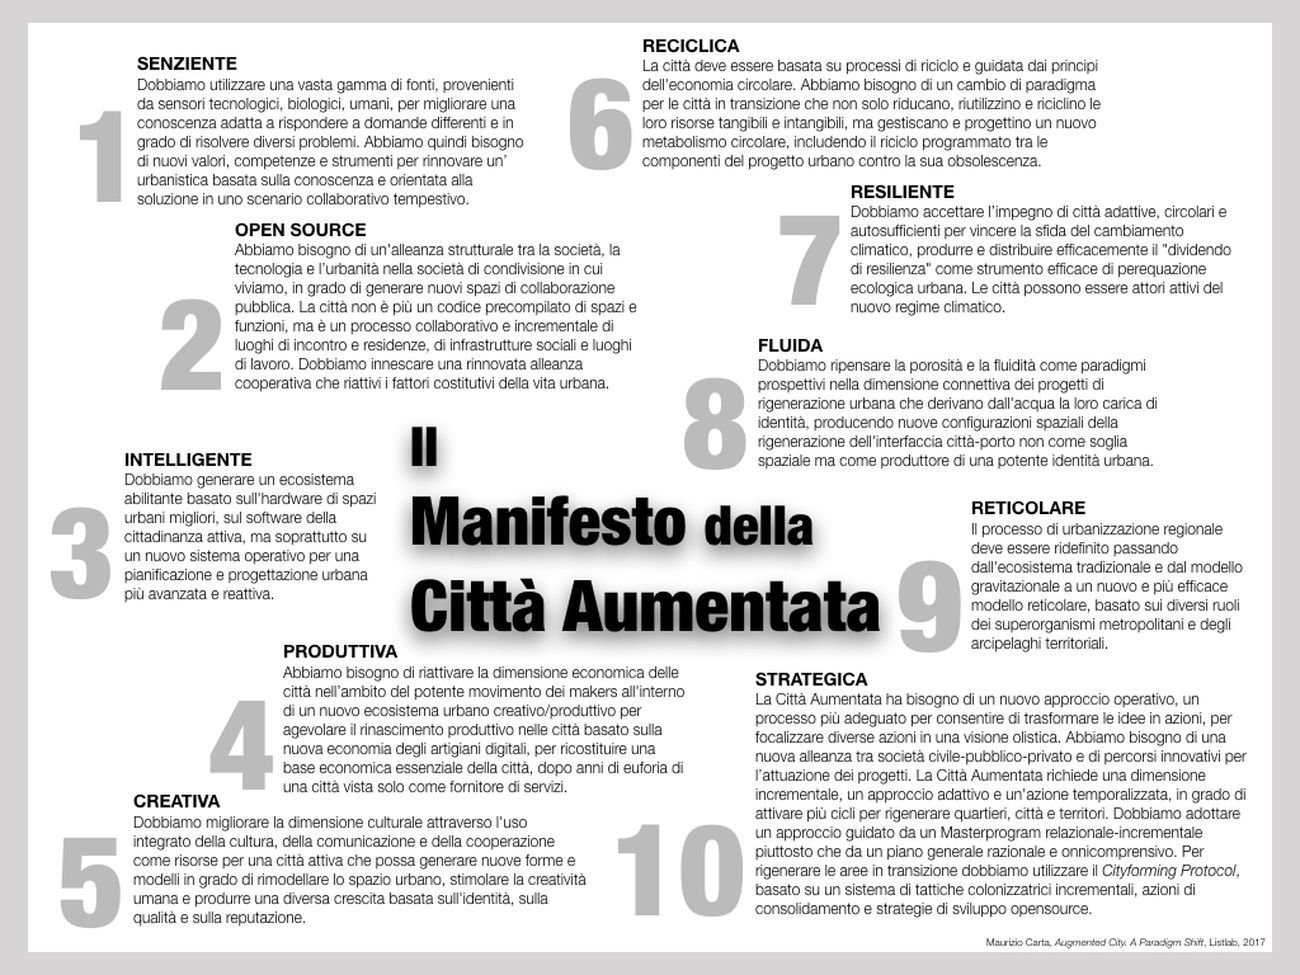 Maurizio Carta, Il Manifesto della Città Aumentata. 10 punti per rigenerare, innovare e sviluppare le città del diverso presente, 2018